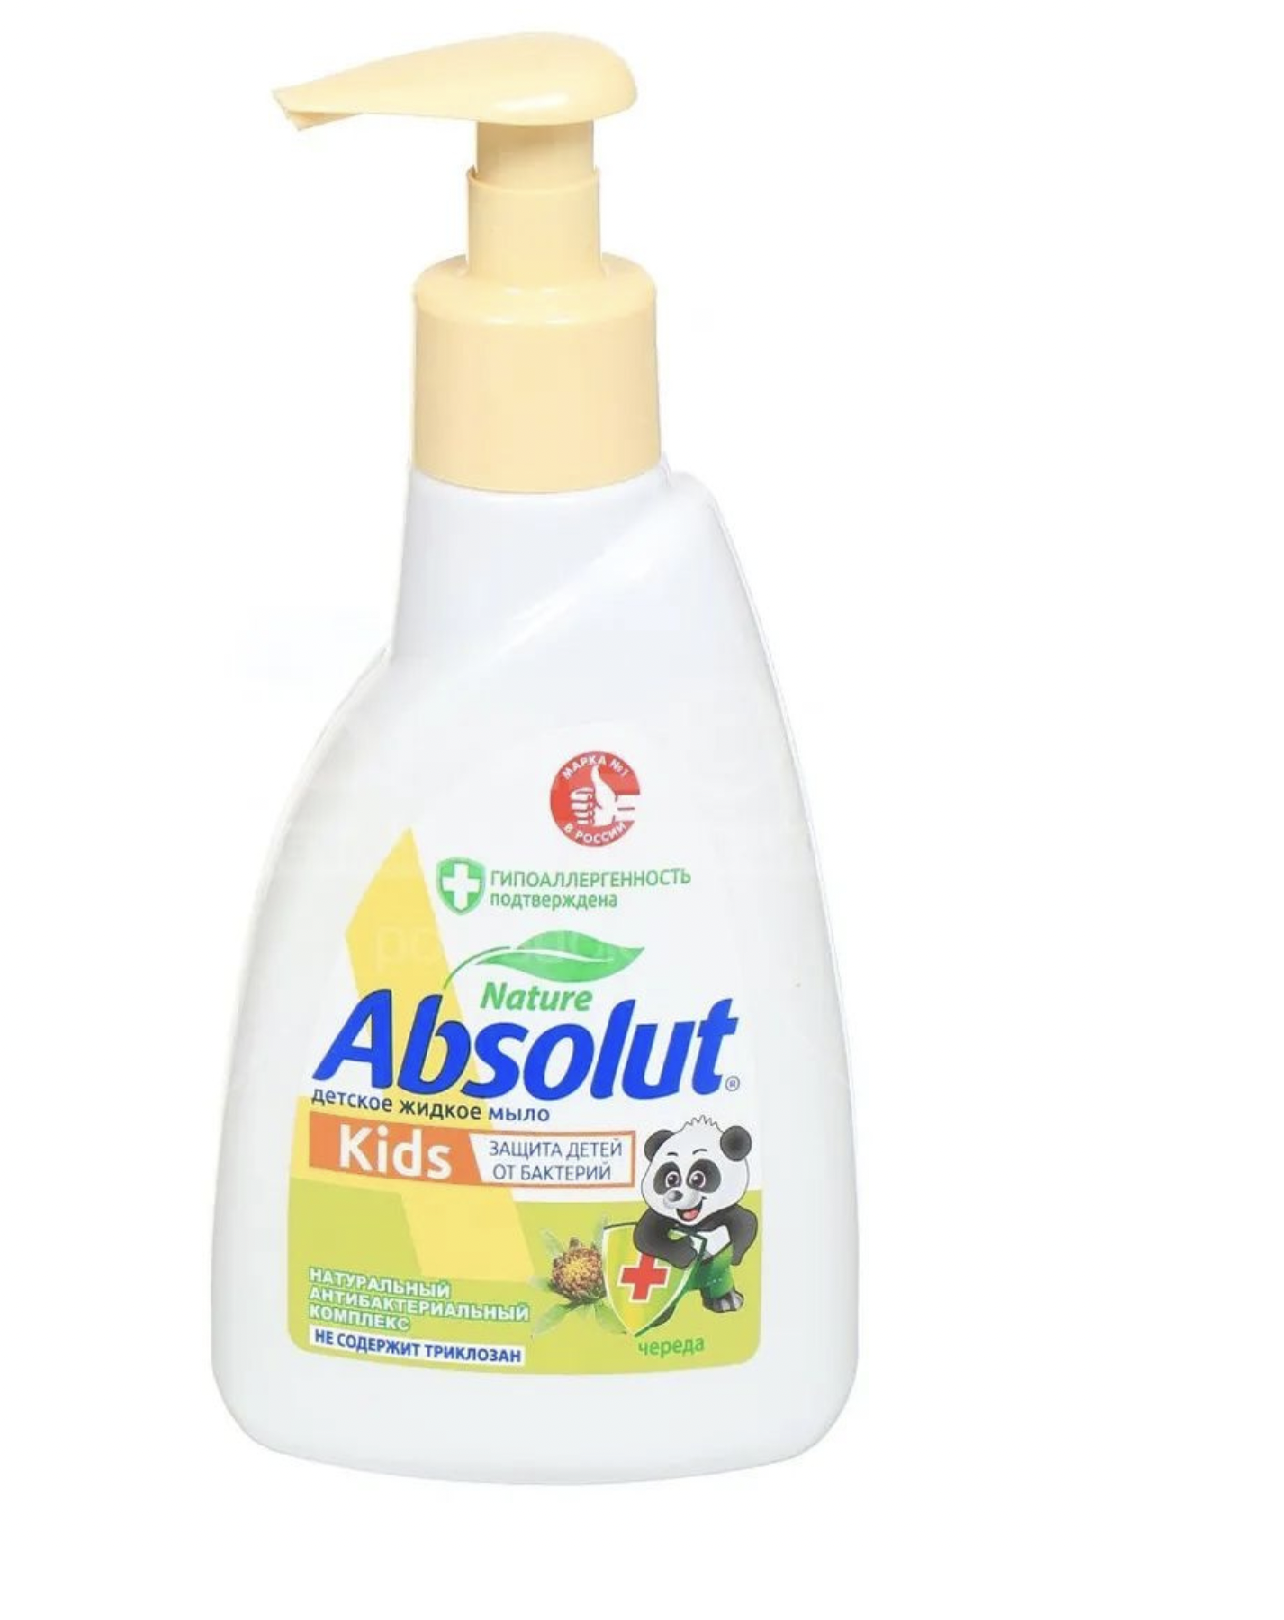 Мыло жидкое Absolut Kids Череда Антибактериальное 250 мл 6 штук мыло жидкое absolut 2в1 нежное антибактериальное 250 мл 3 штуки